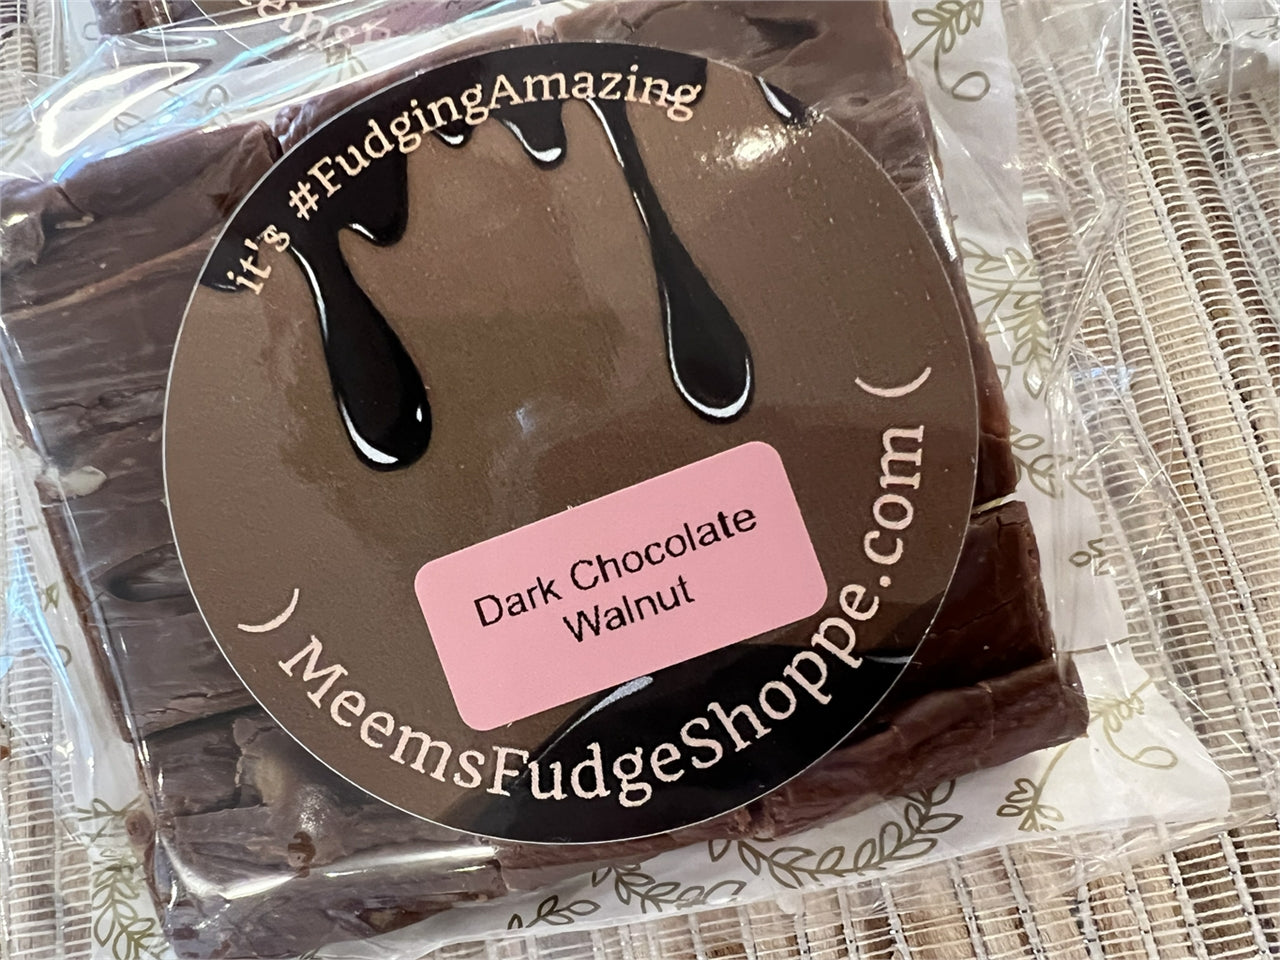 Dark Chocolate Fudge with Walnuts